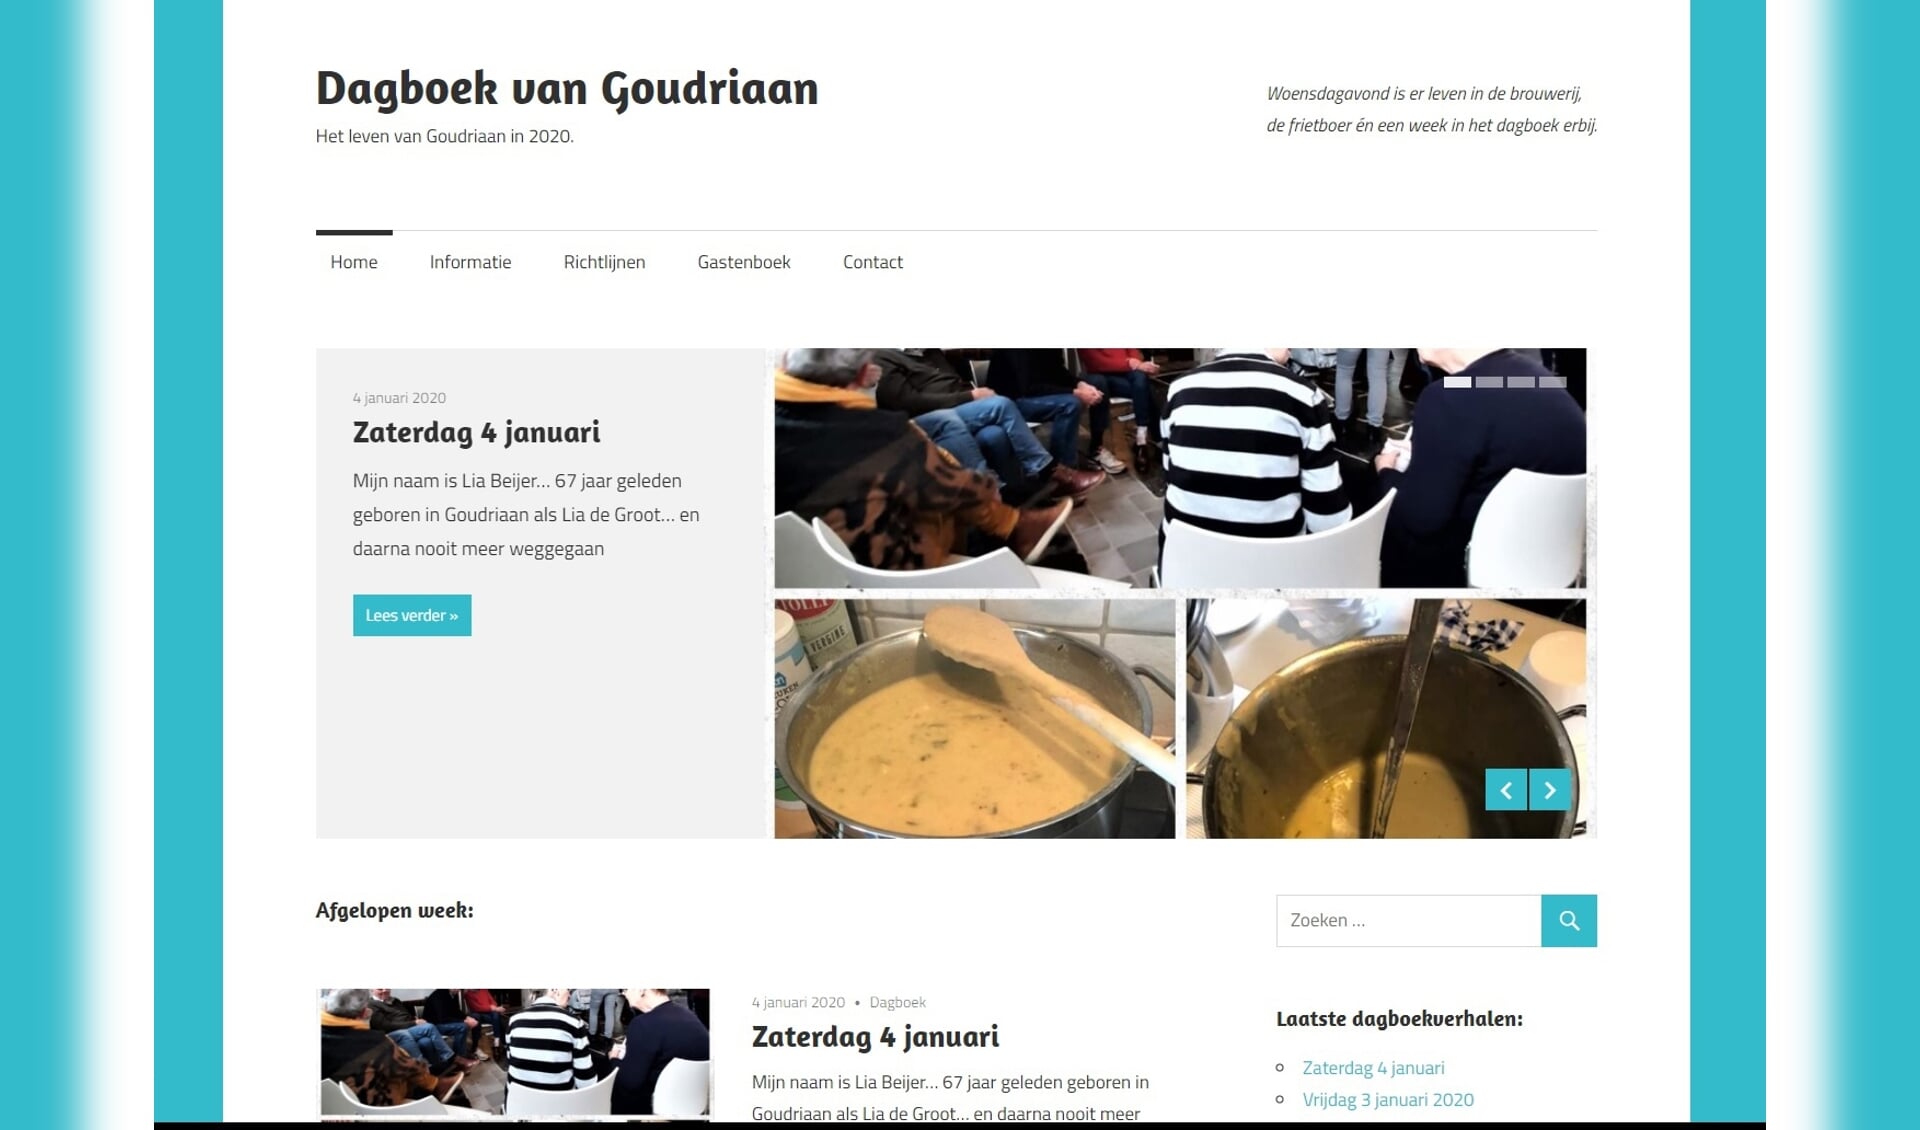 • De website dagboekvangoudriaan.nl.